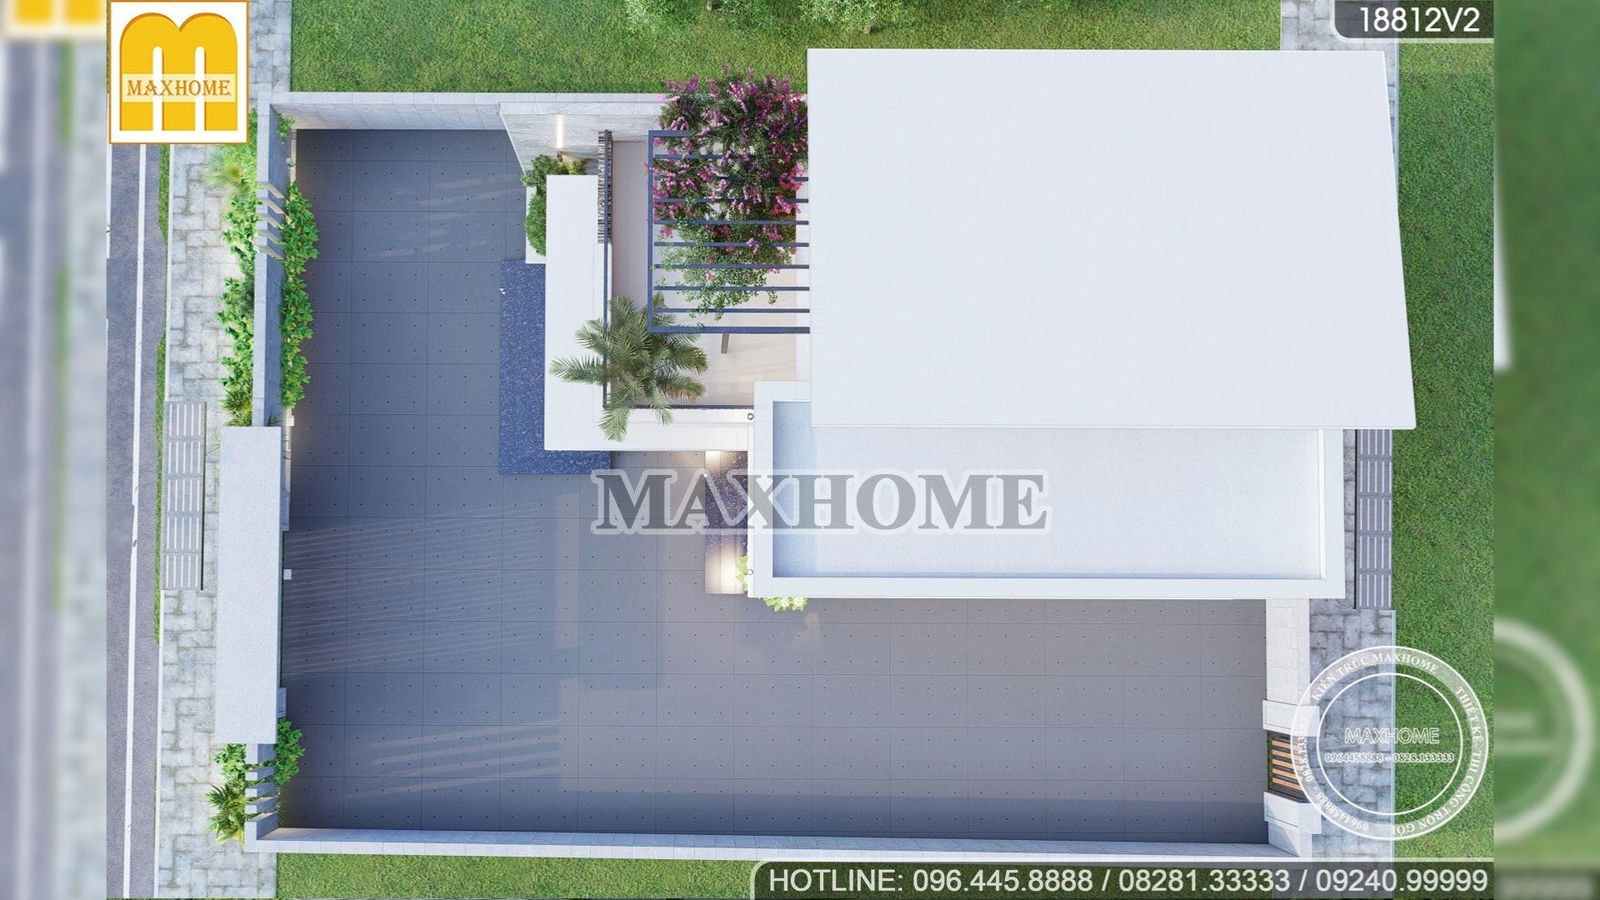 Tham quan mẫu nhà mái lệch Maxhome HOT nhất năm 2022 | MH00774